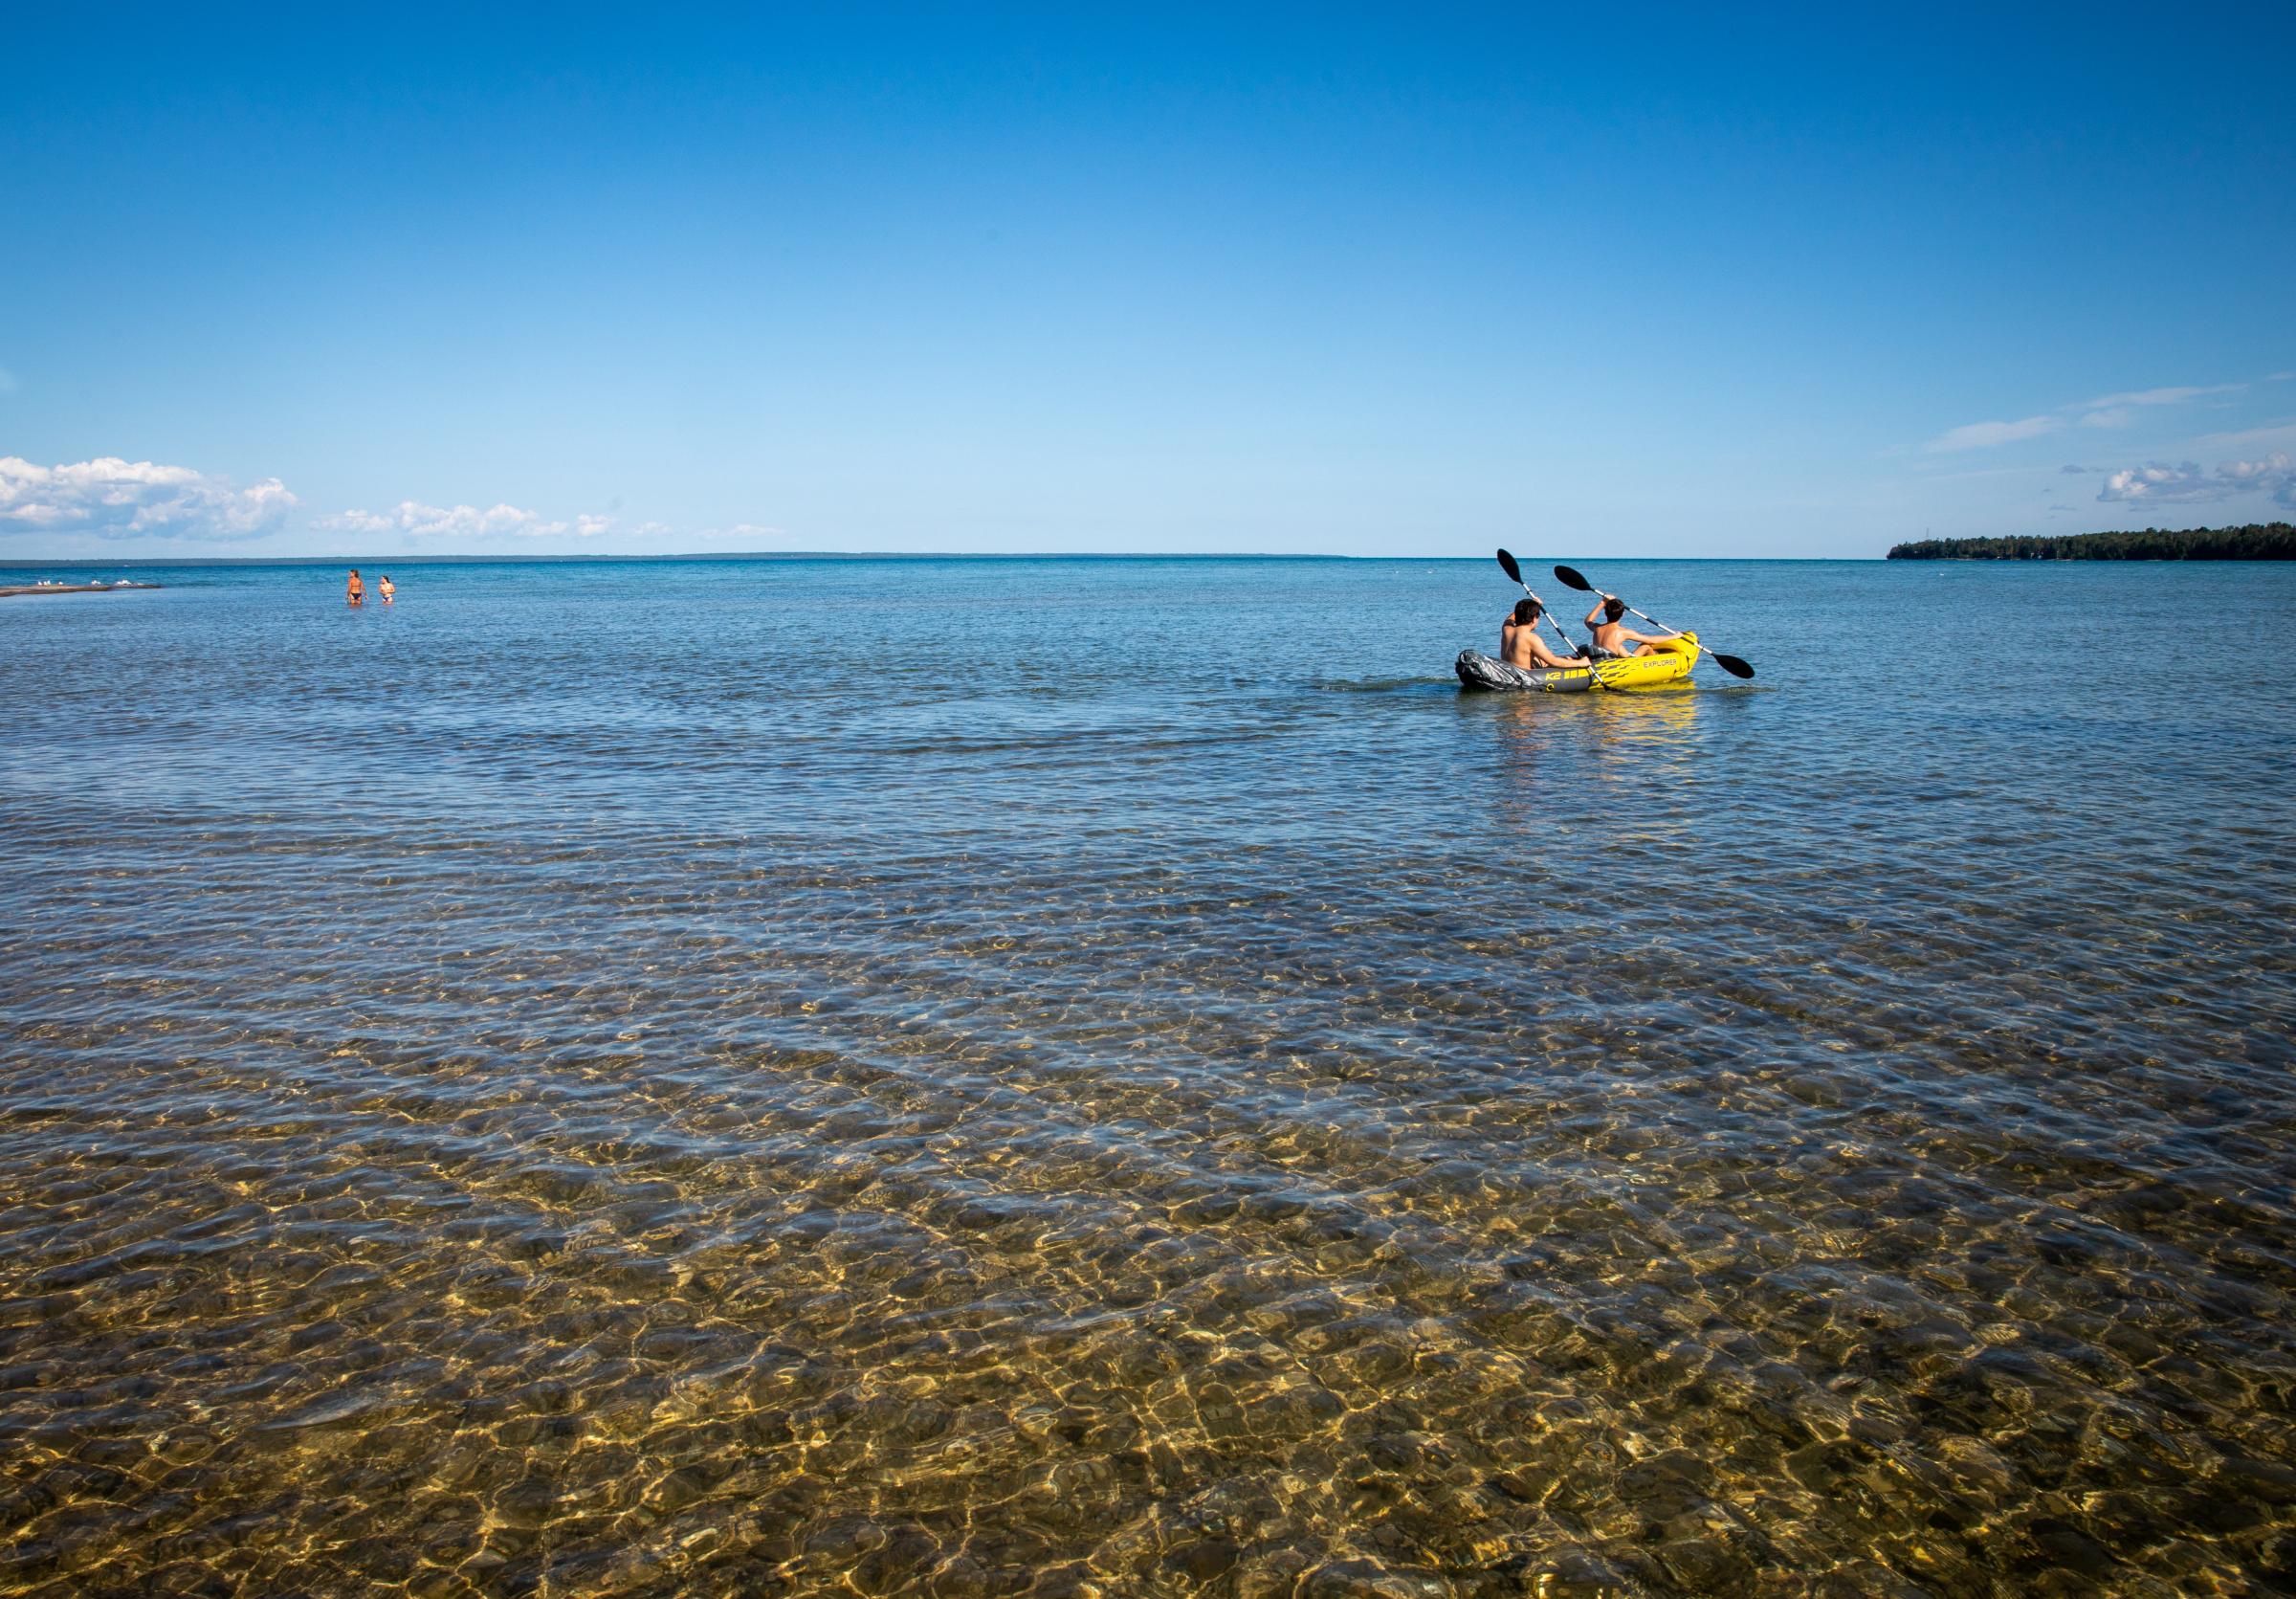 America - Kayaking on Lake Huron of Mackinaw City, Michigan